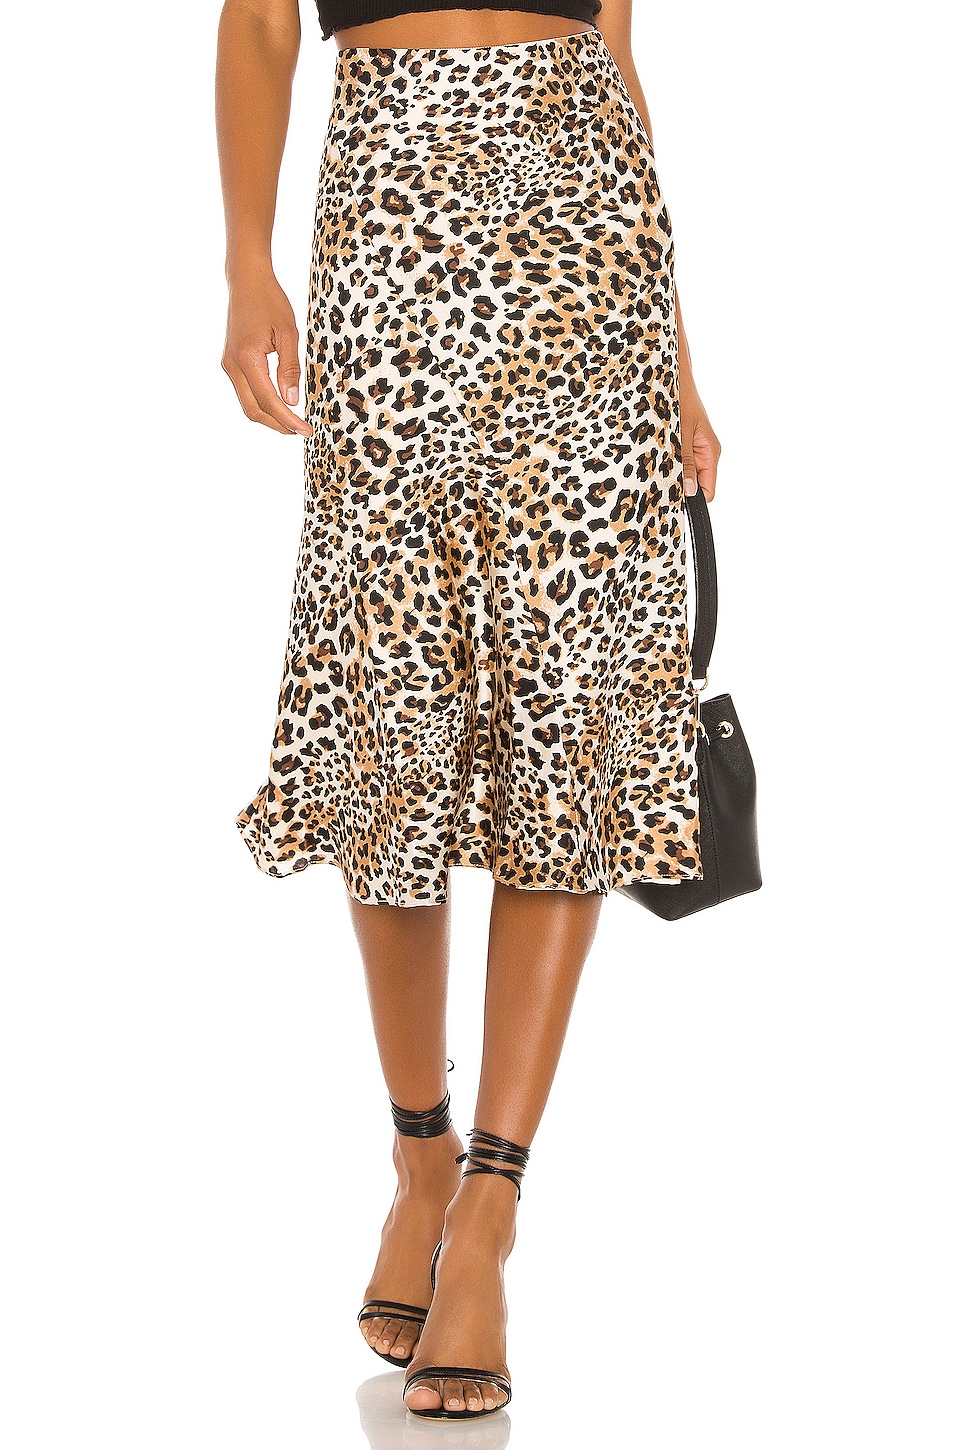 MAJORELLE Kara Skirt in Leopard | REVOLVE